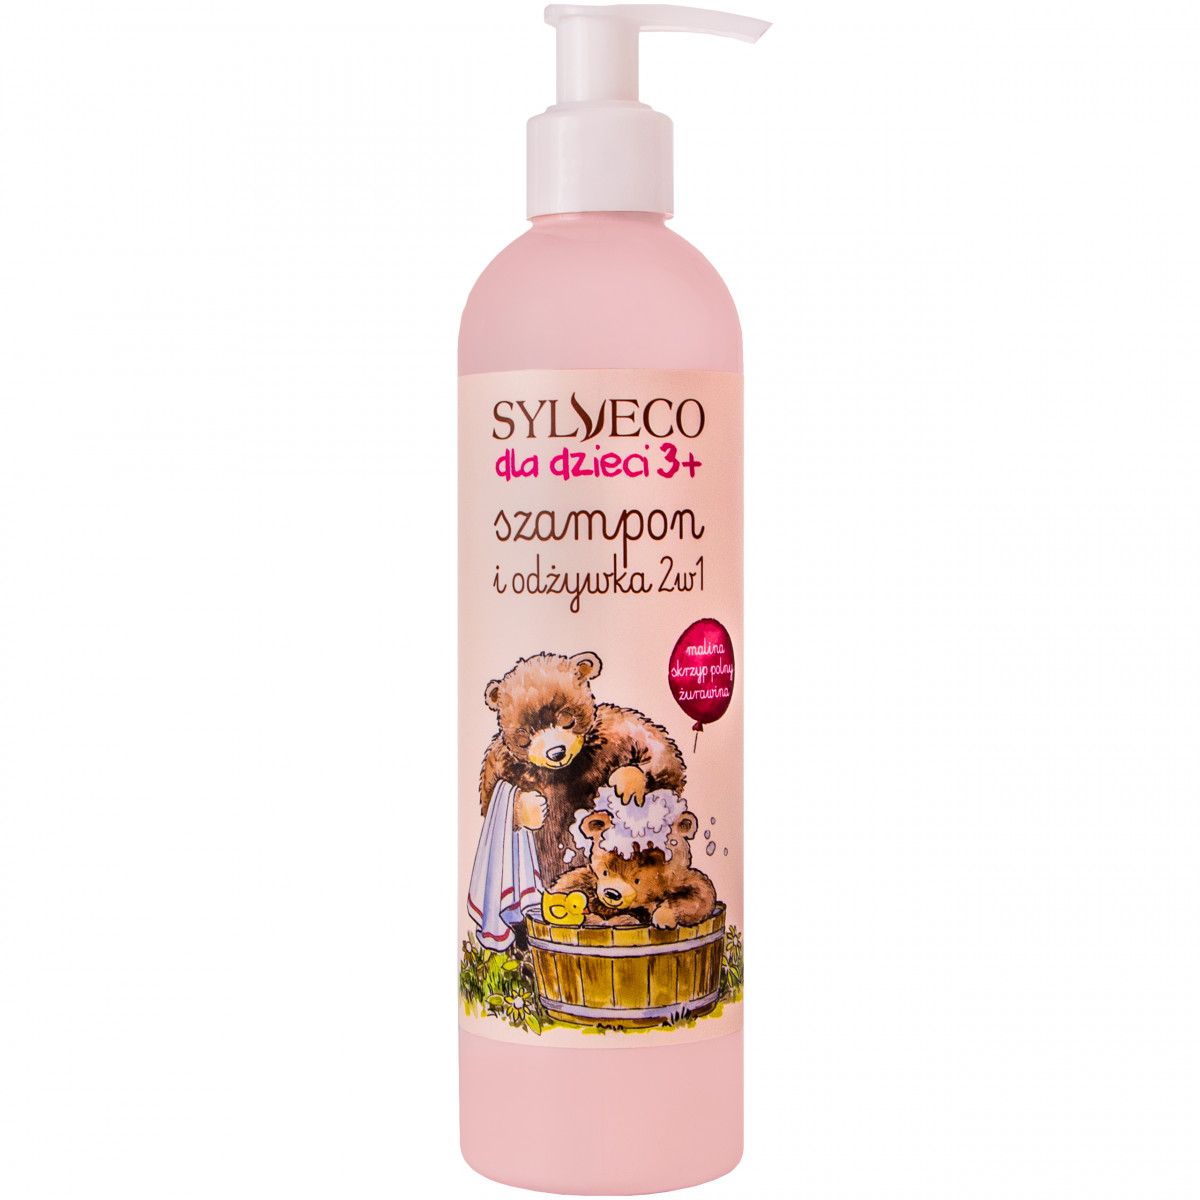 szampon dla dzieci ktory nie szczypiący w oczy